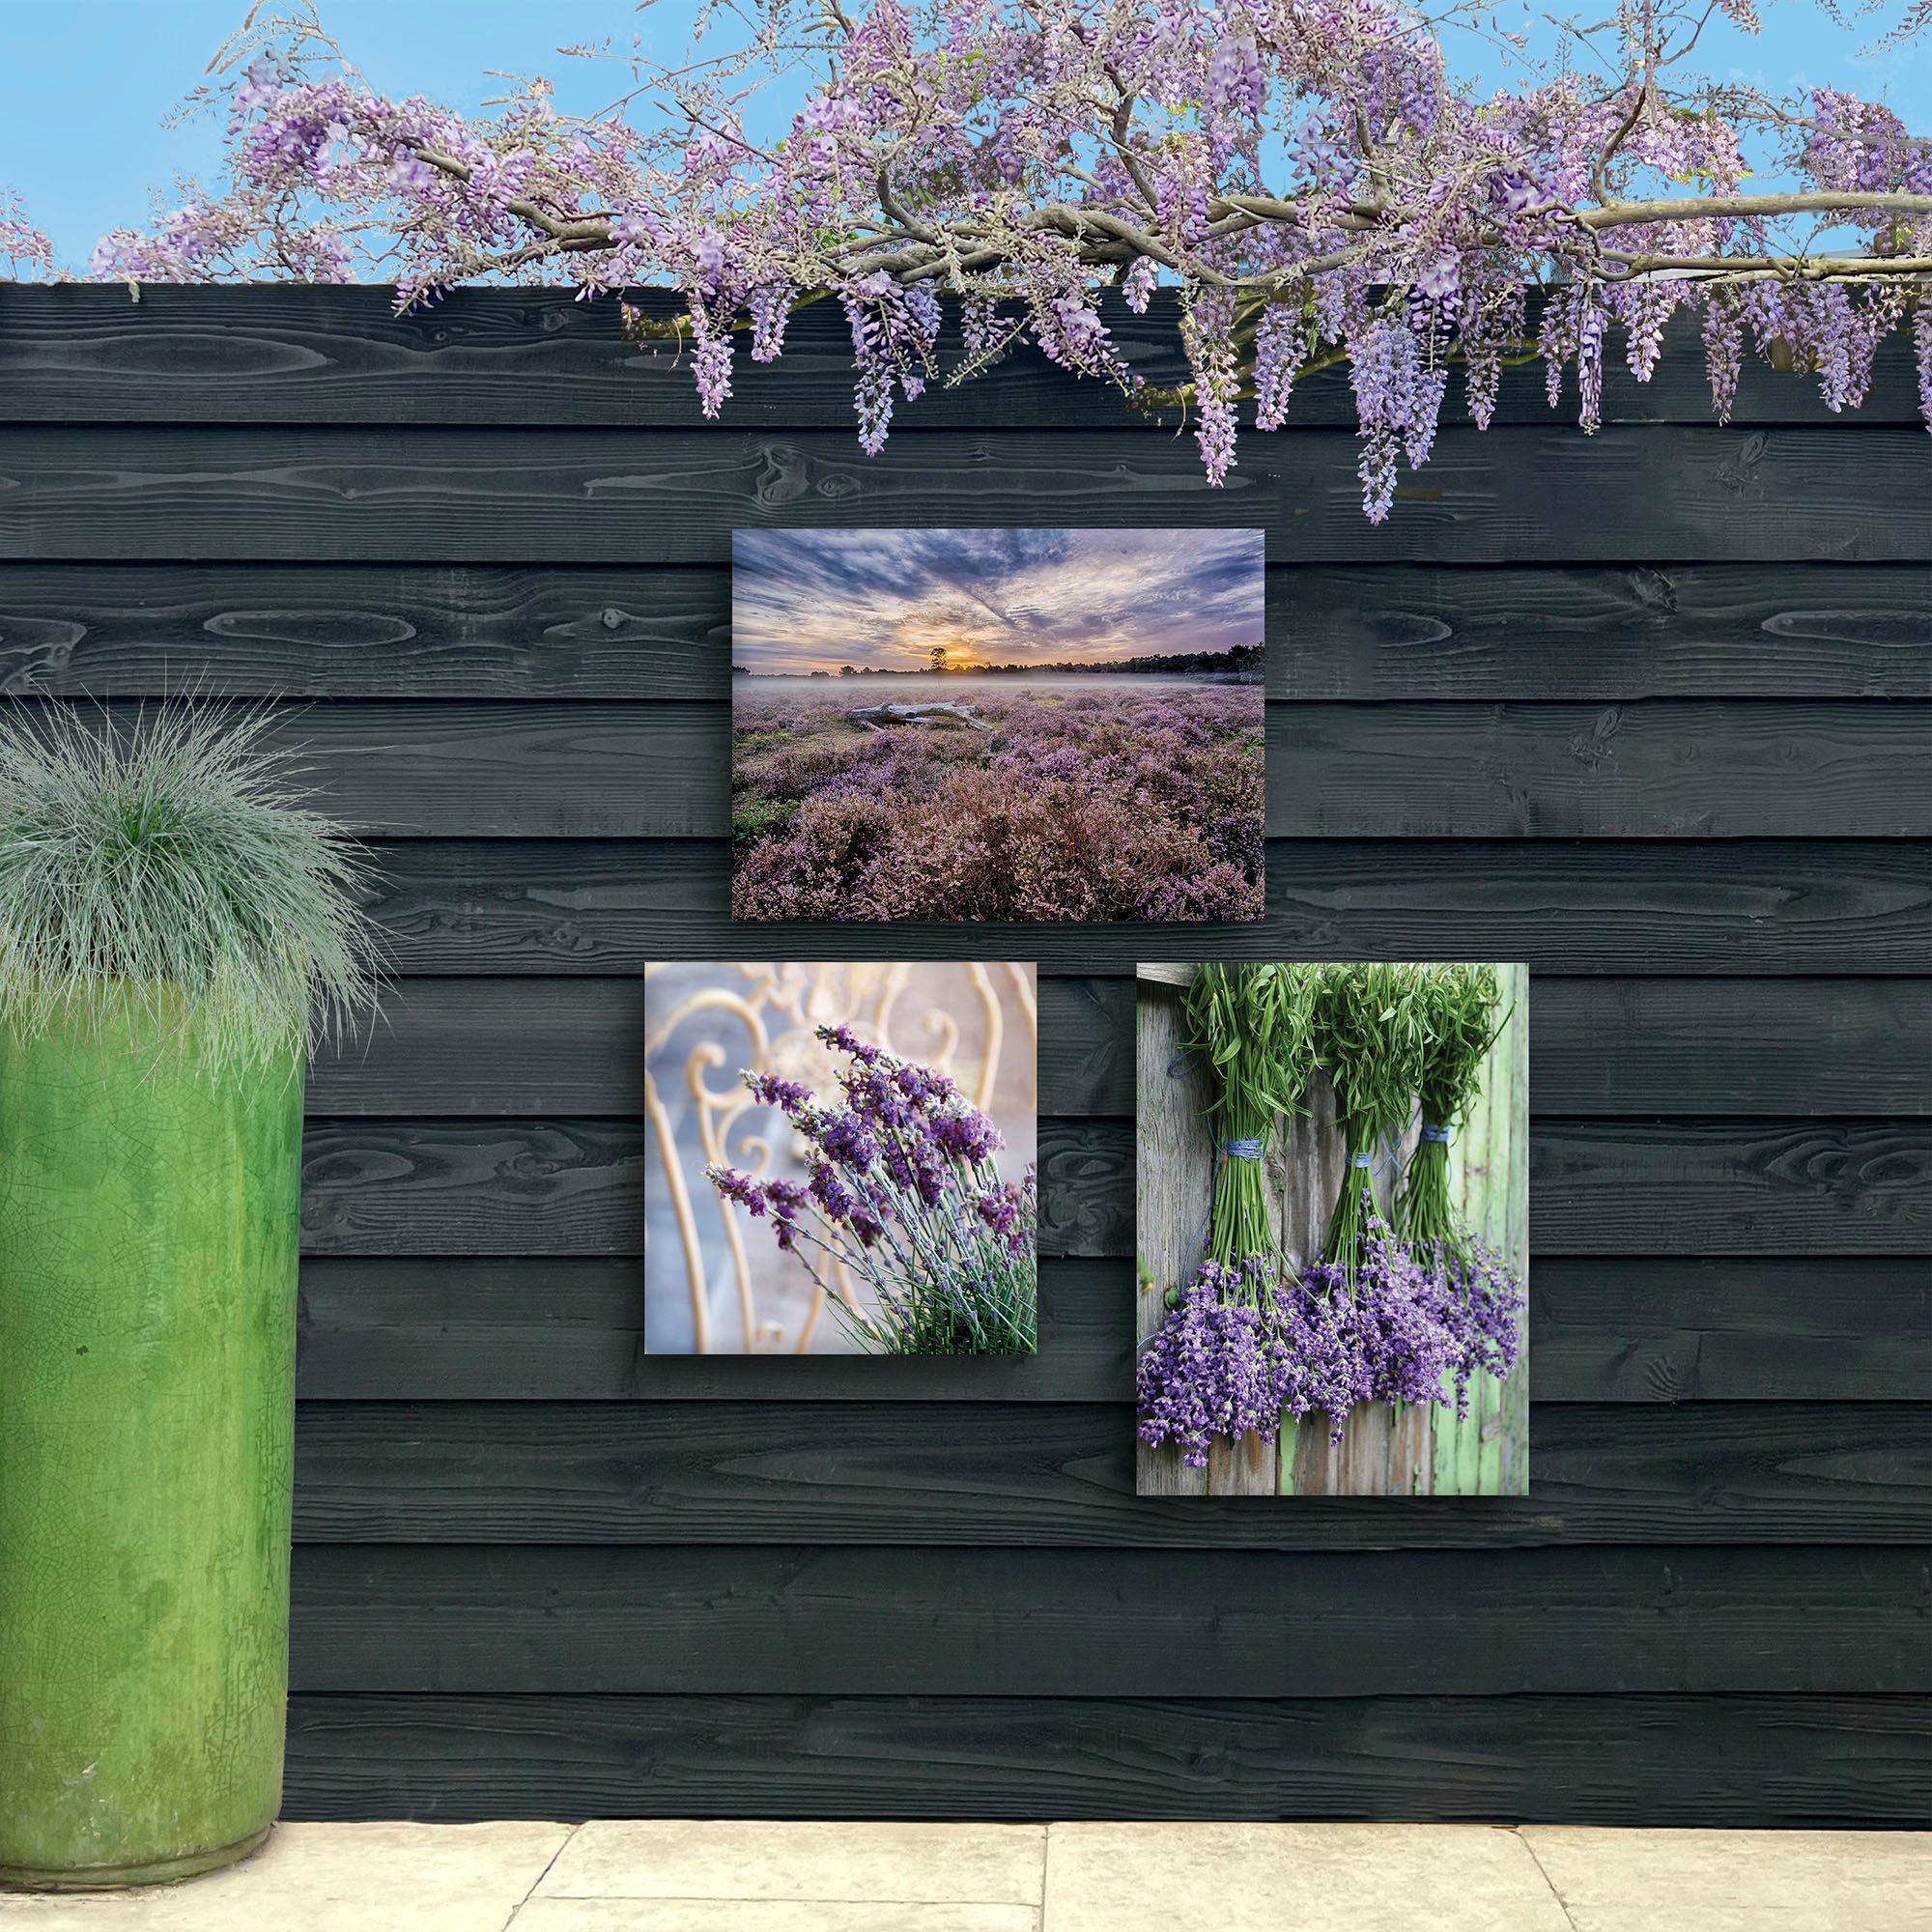 St) Leinwandbild Art for home Lavendel 50x70cm, the Outdoor (1